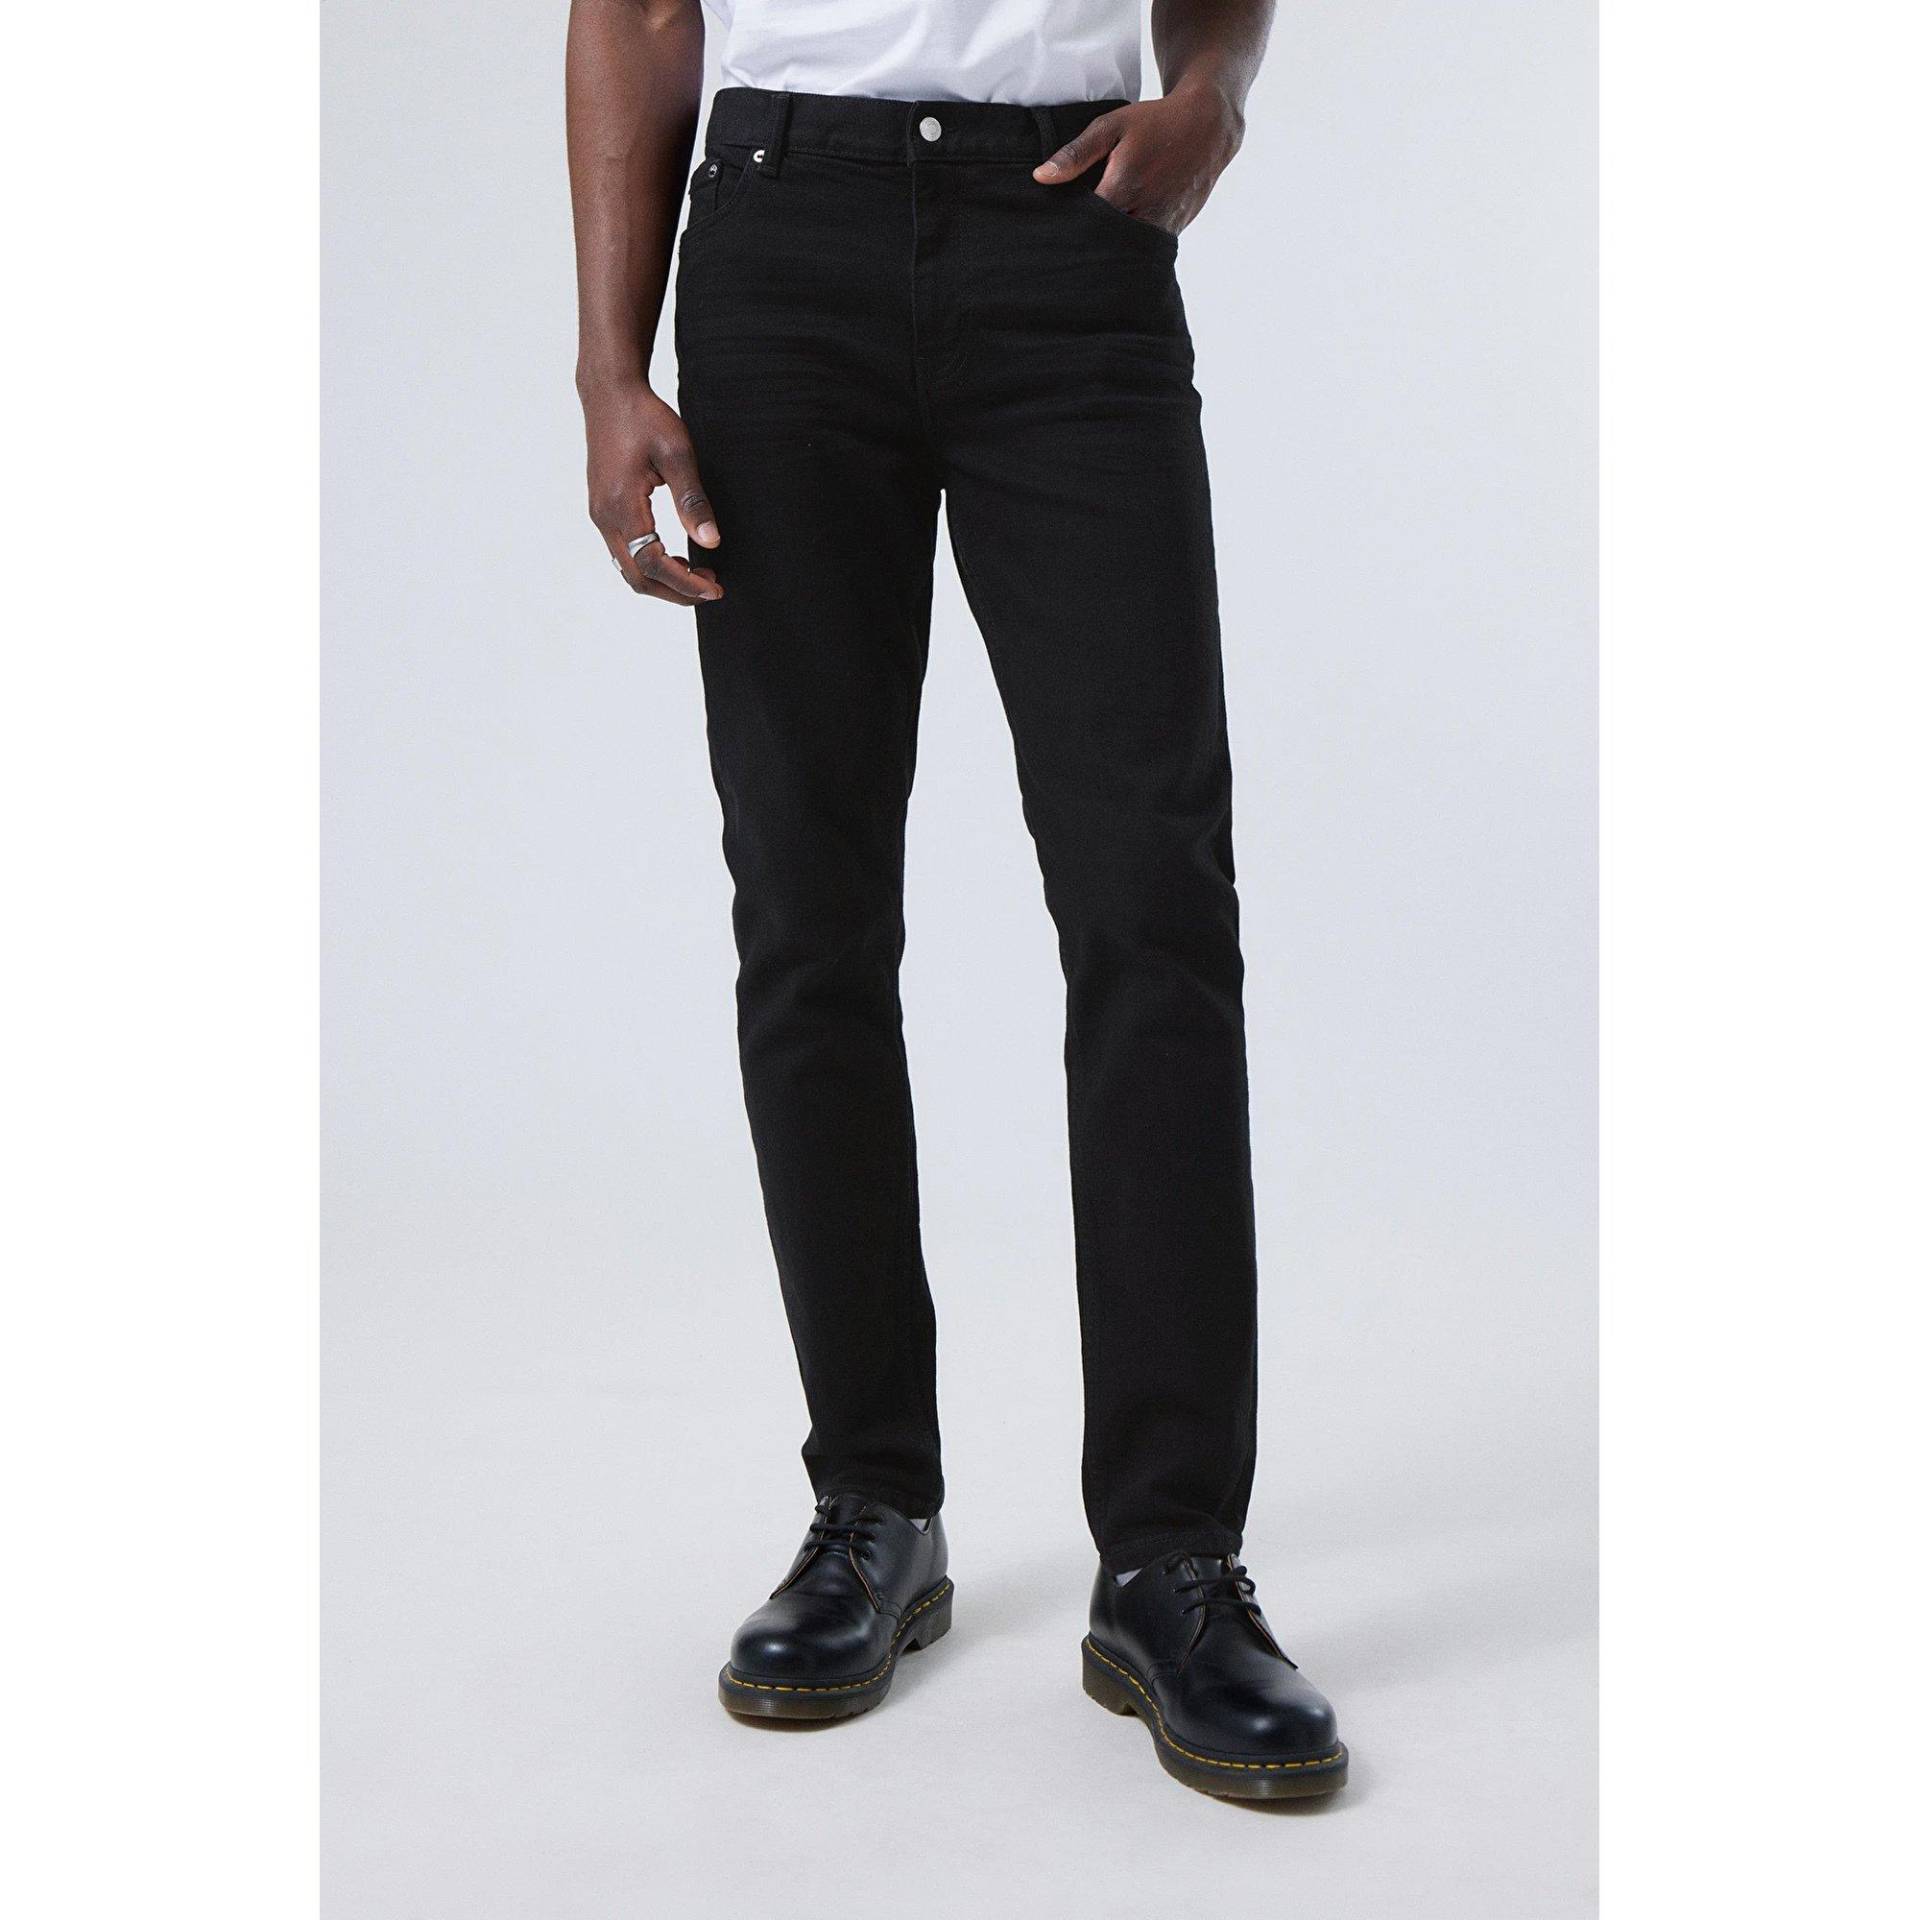 Jeans, Tapered Fit Herren Black L30/W31 von WEEKDAY